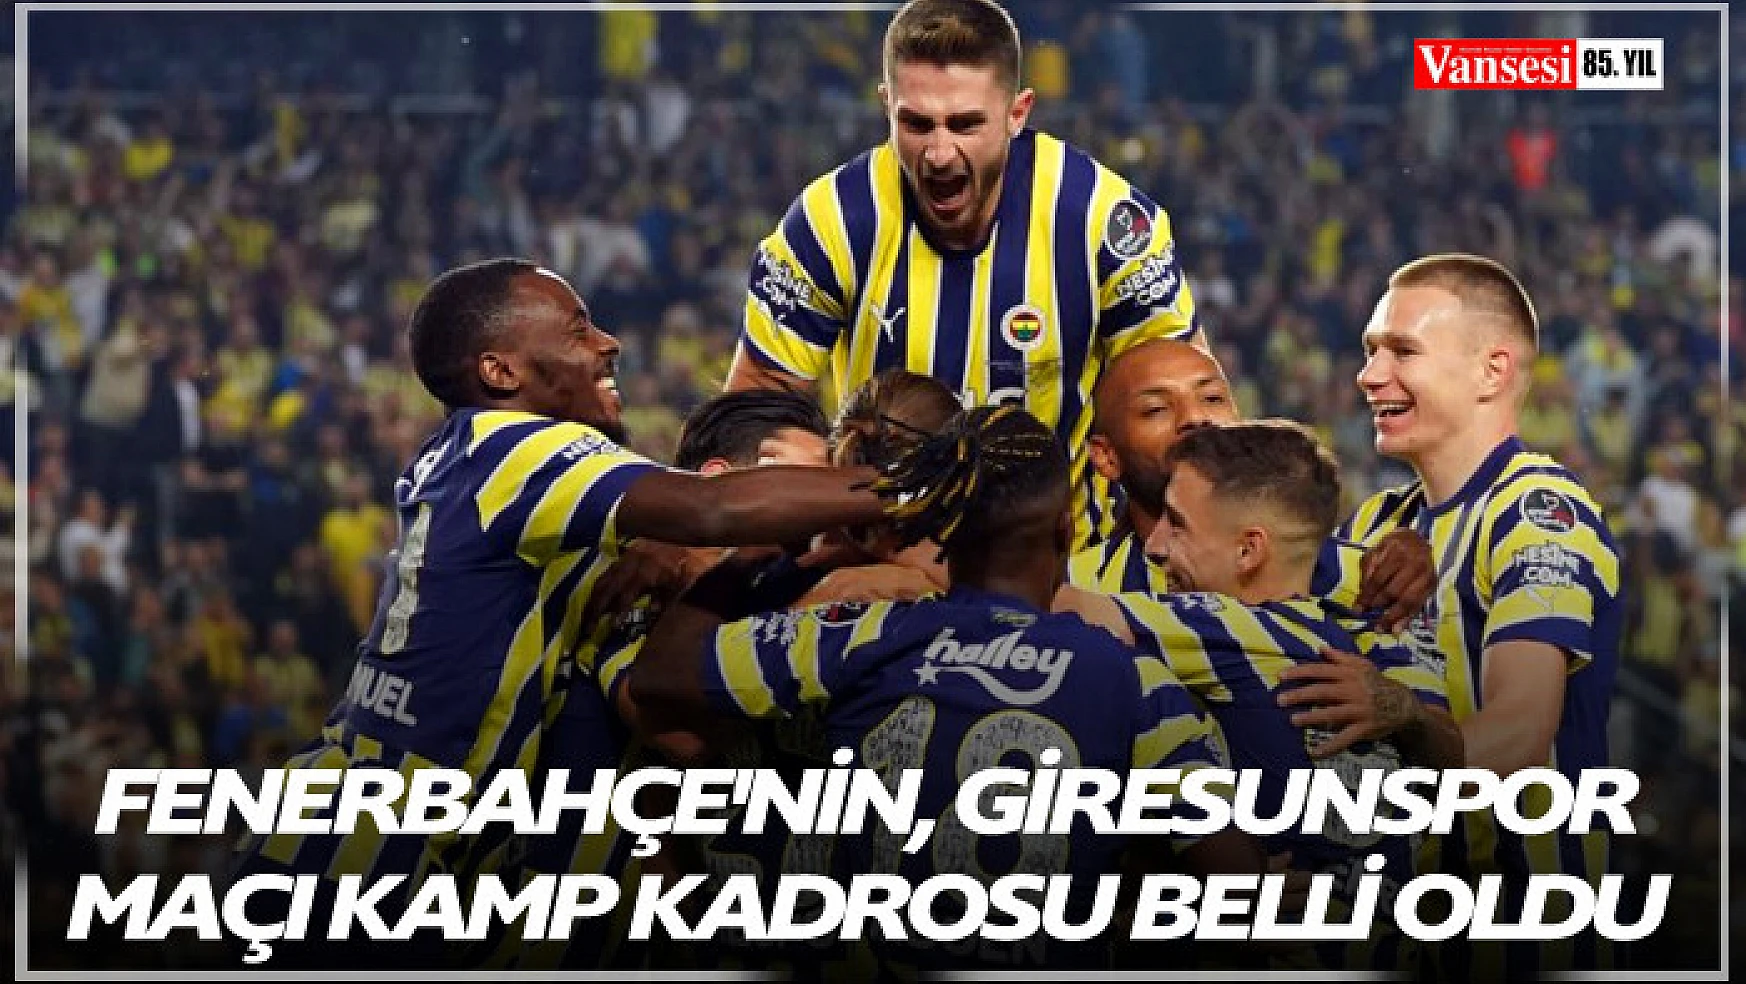 Fenerbahçe'nin, Giresunspor maçı kamp kadrosu belli oldu